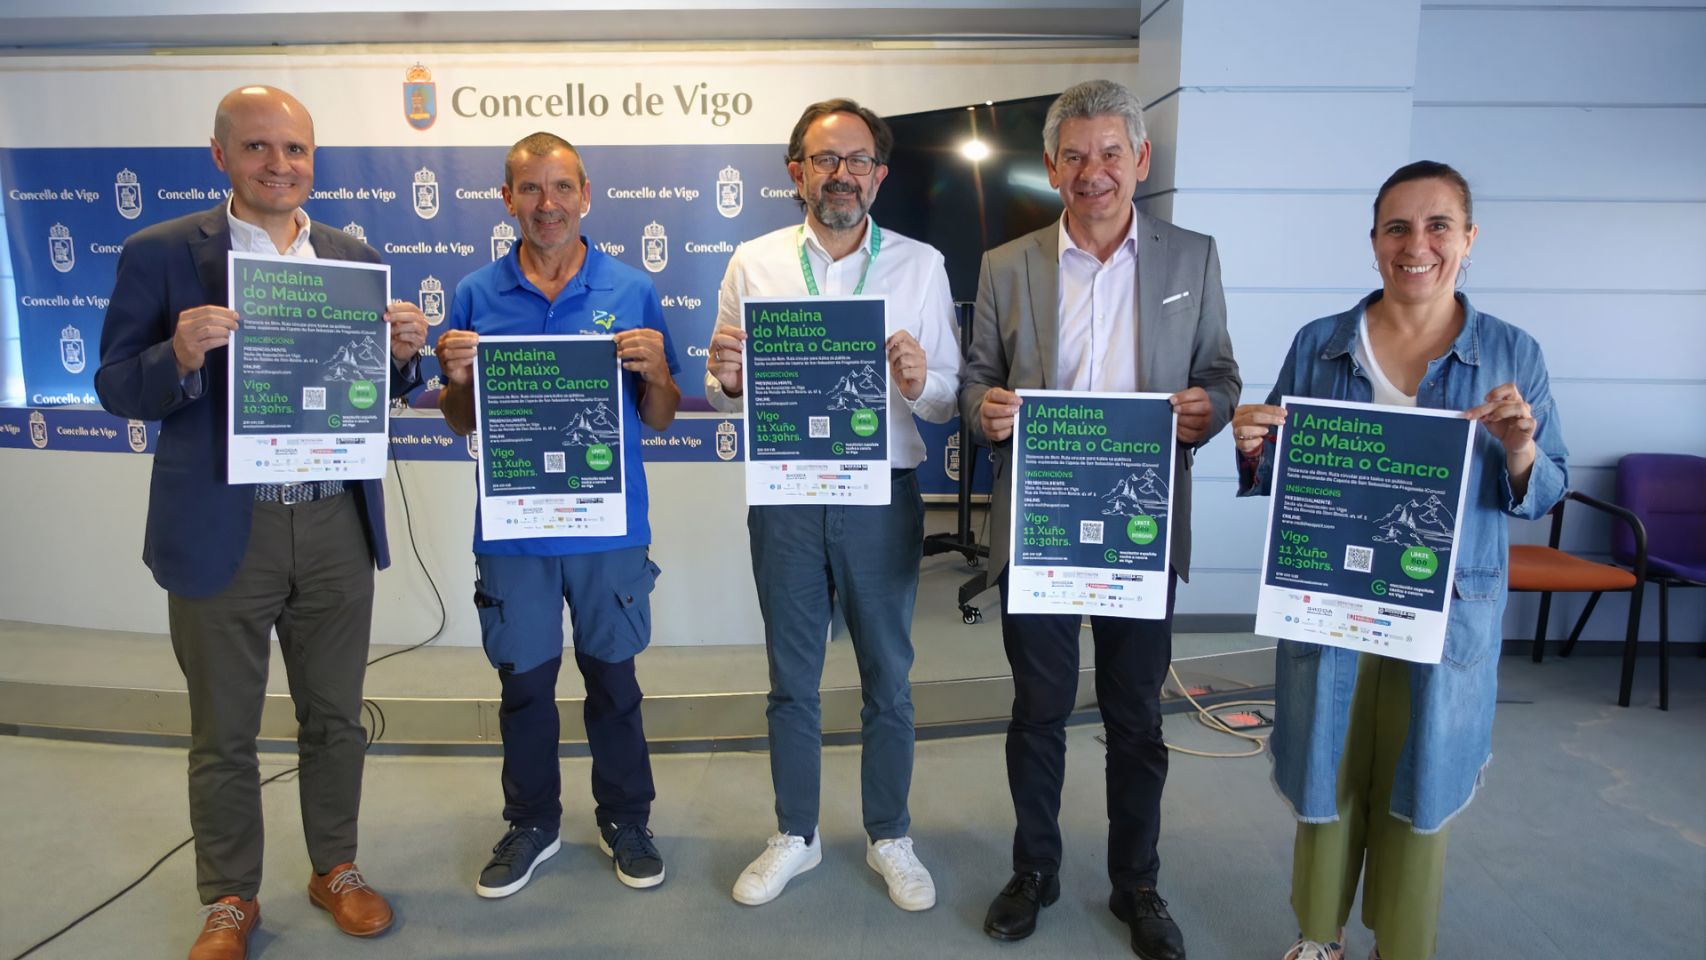 Presentación de la I Andaina do Maúxo contra el cáncer, en Vigo.